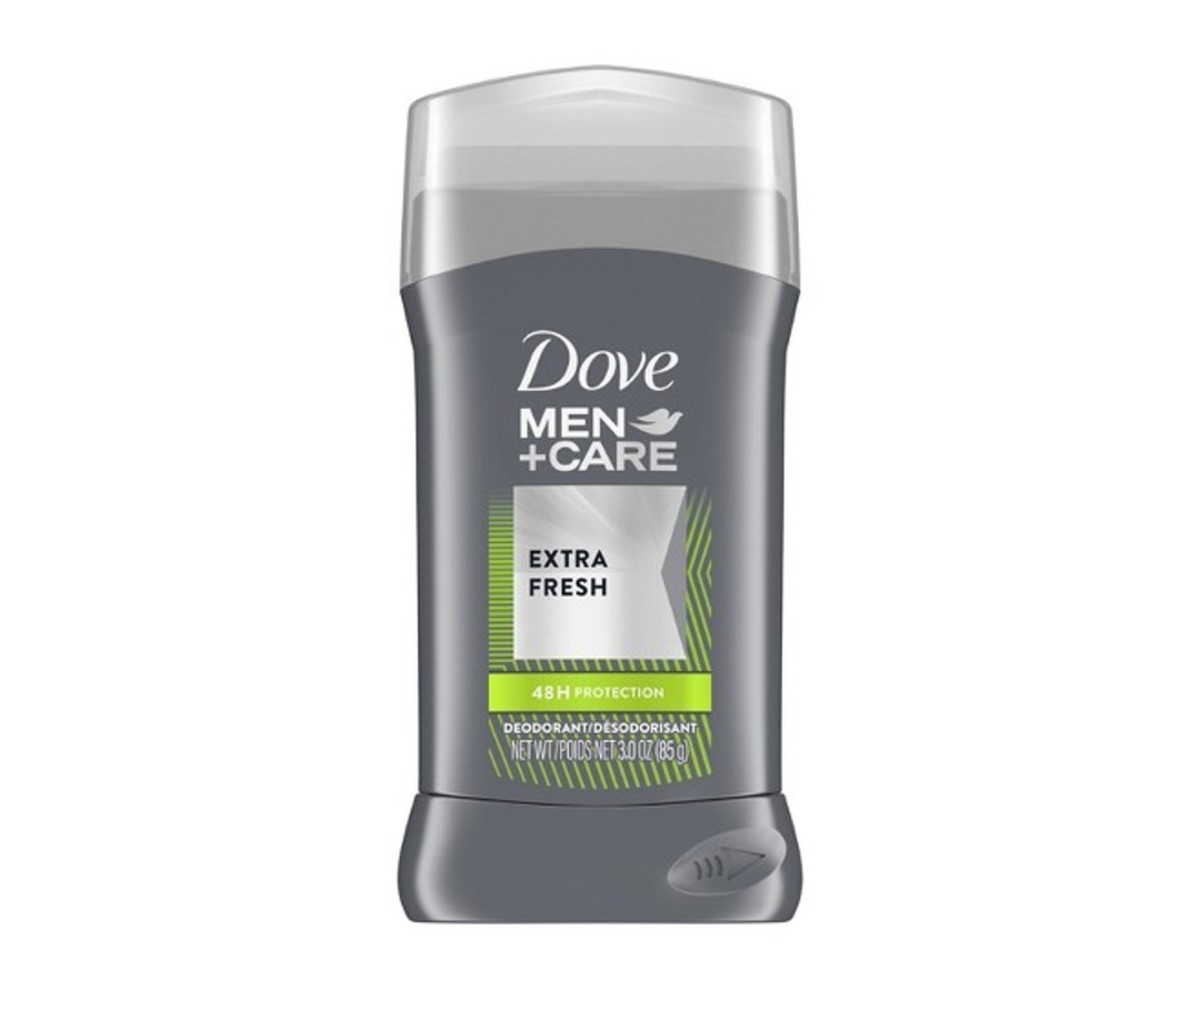 Fresh Deodorant for Men